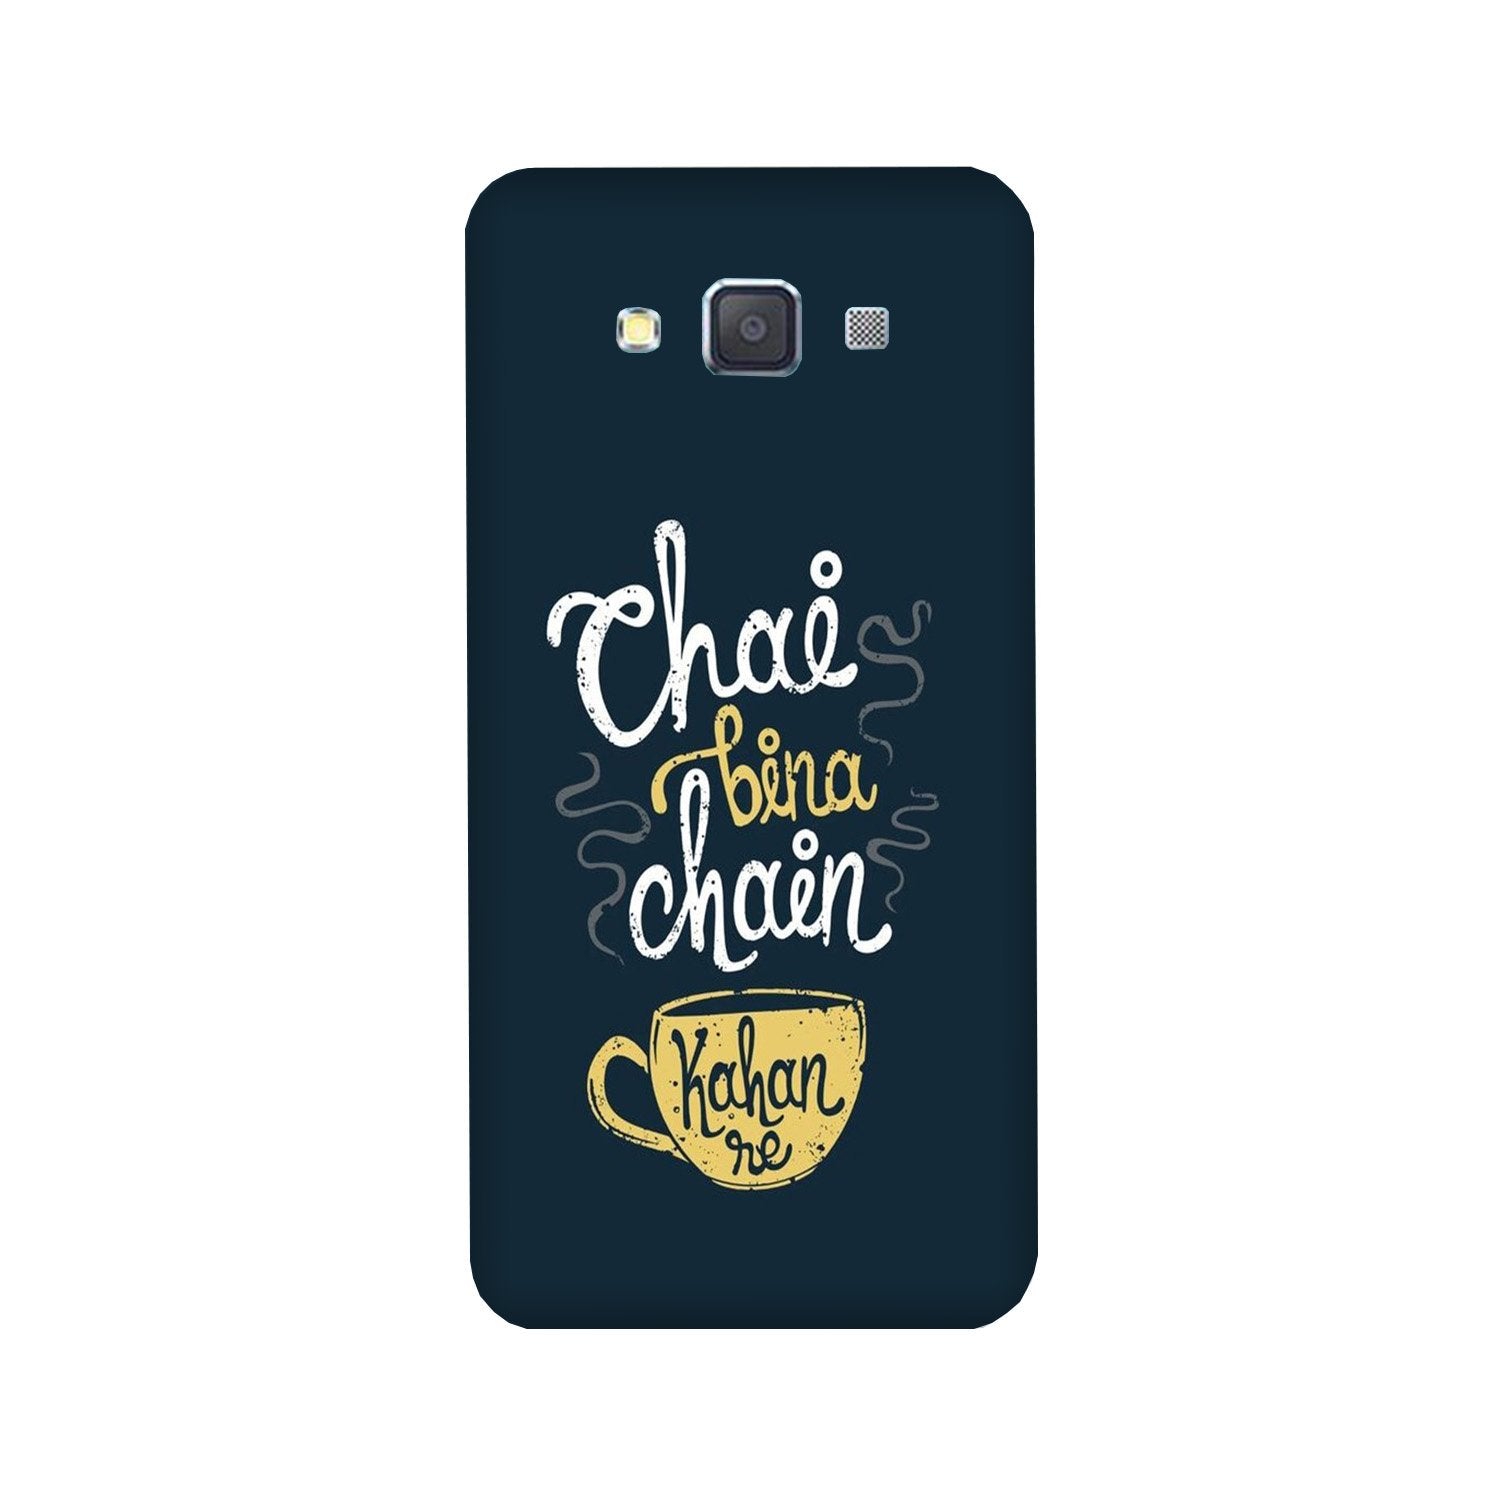 Chai Bina Chain Kahan Case for Galaxy Grand Max(Design - 144)